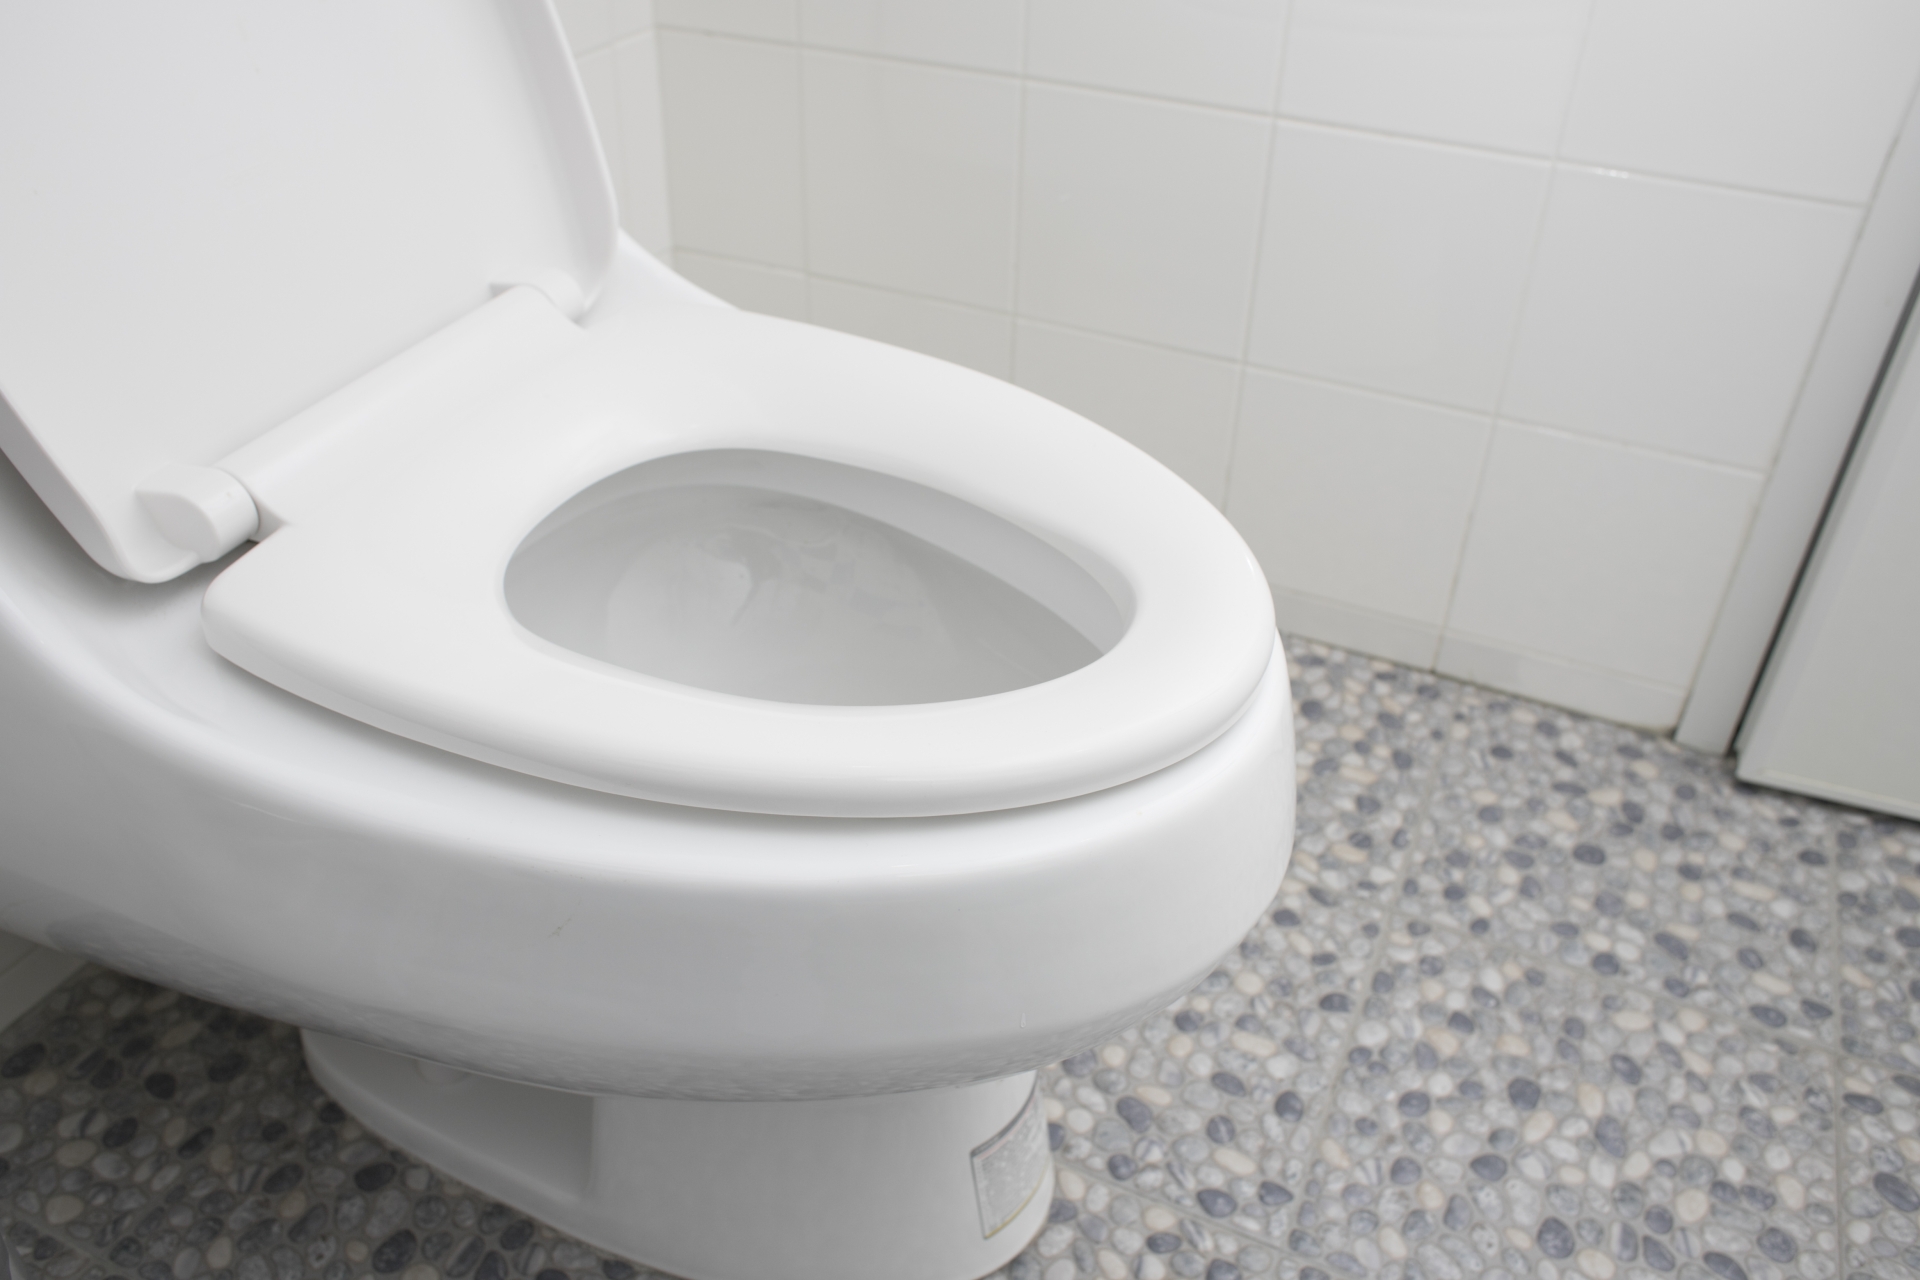 トイレの便器についたがんこな尿石を簡単に落とす方法を教えます